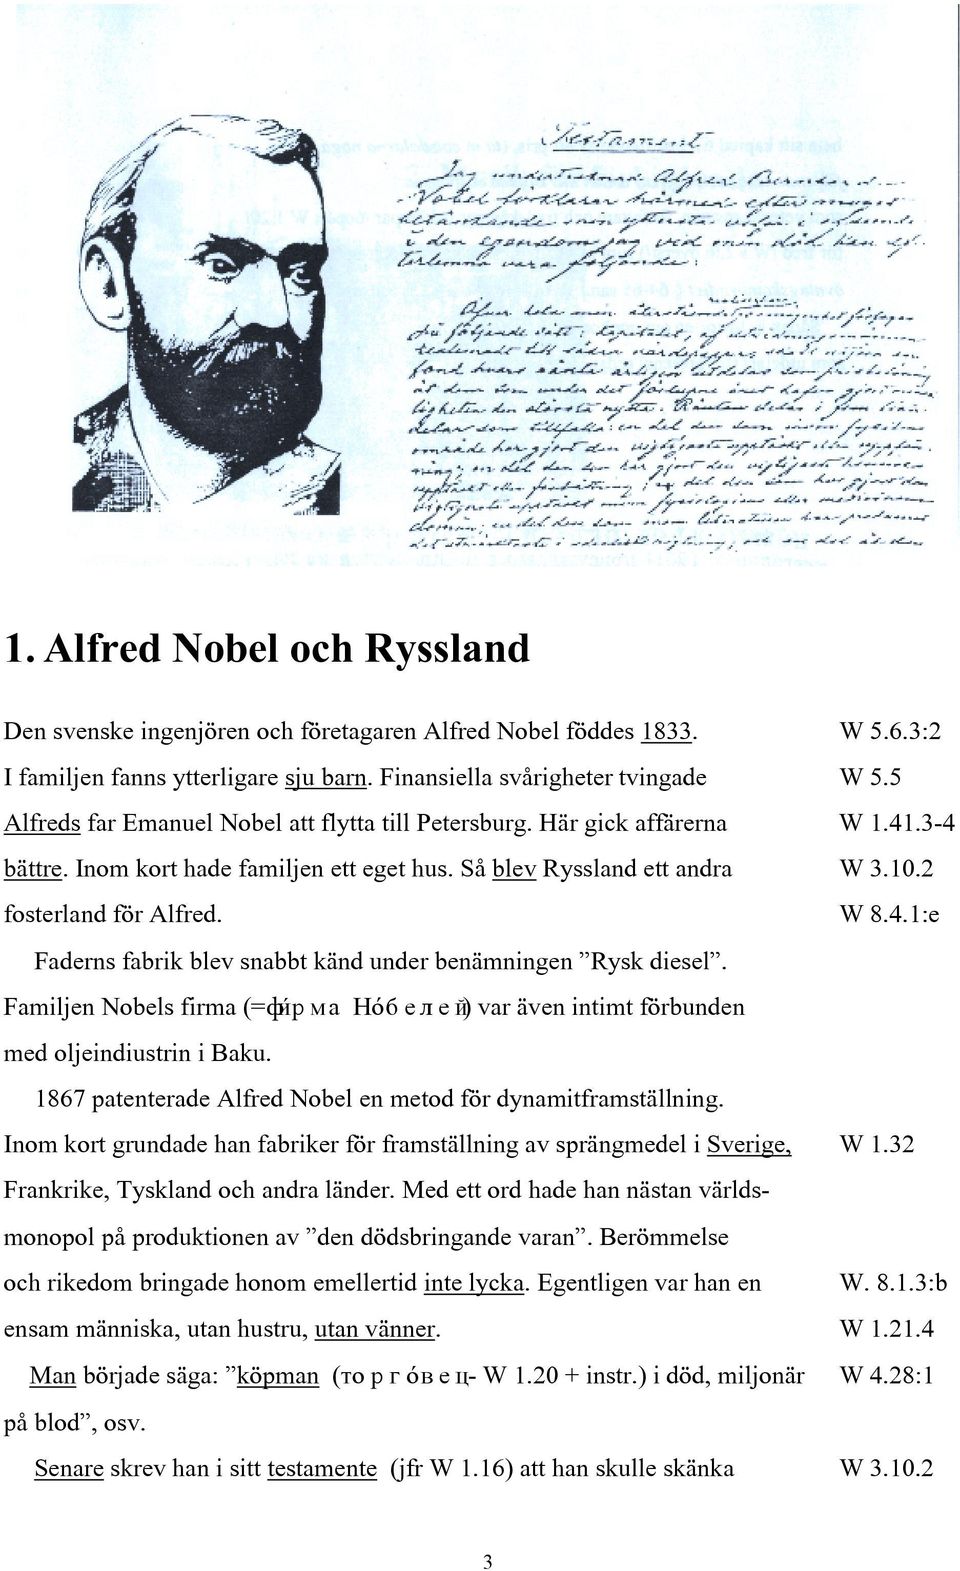 Familjen Nobels firma (=ф рма œ±белей) var även intimt förbunden med oljeindiustrin i Baku. 1867 patenterade Alfred Nobel en metod för dynamitframställning.